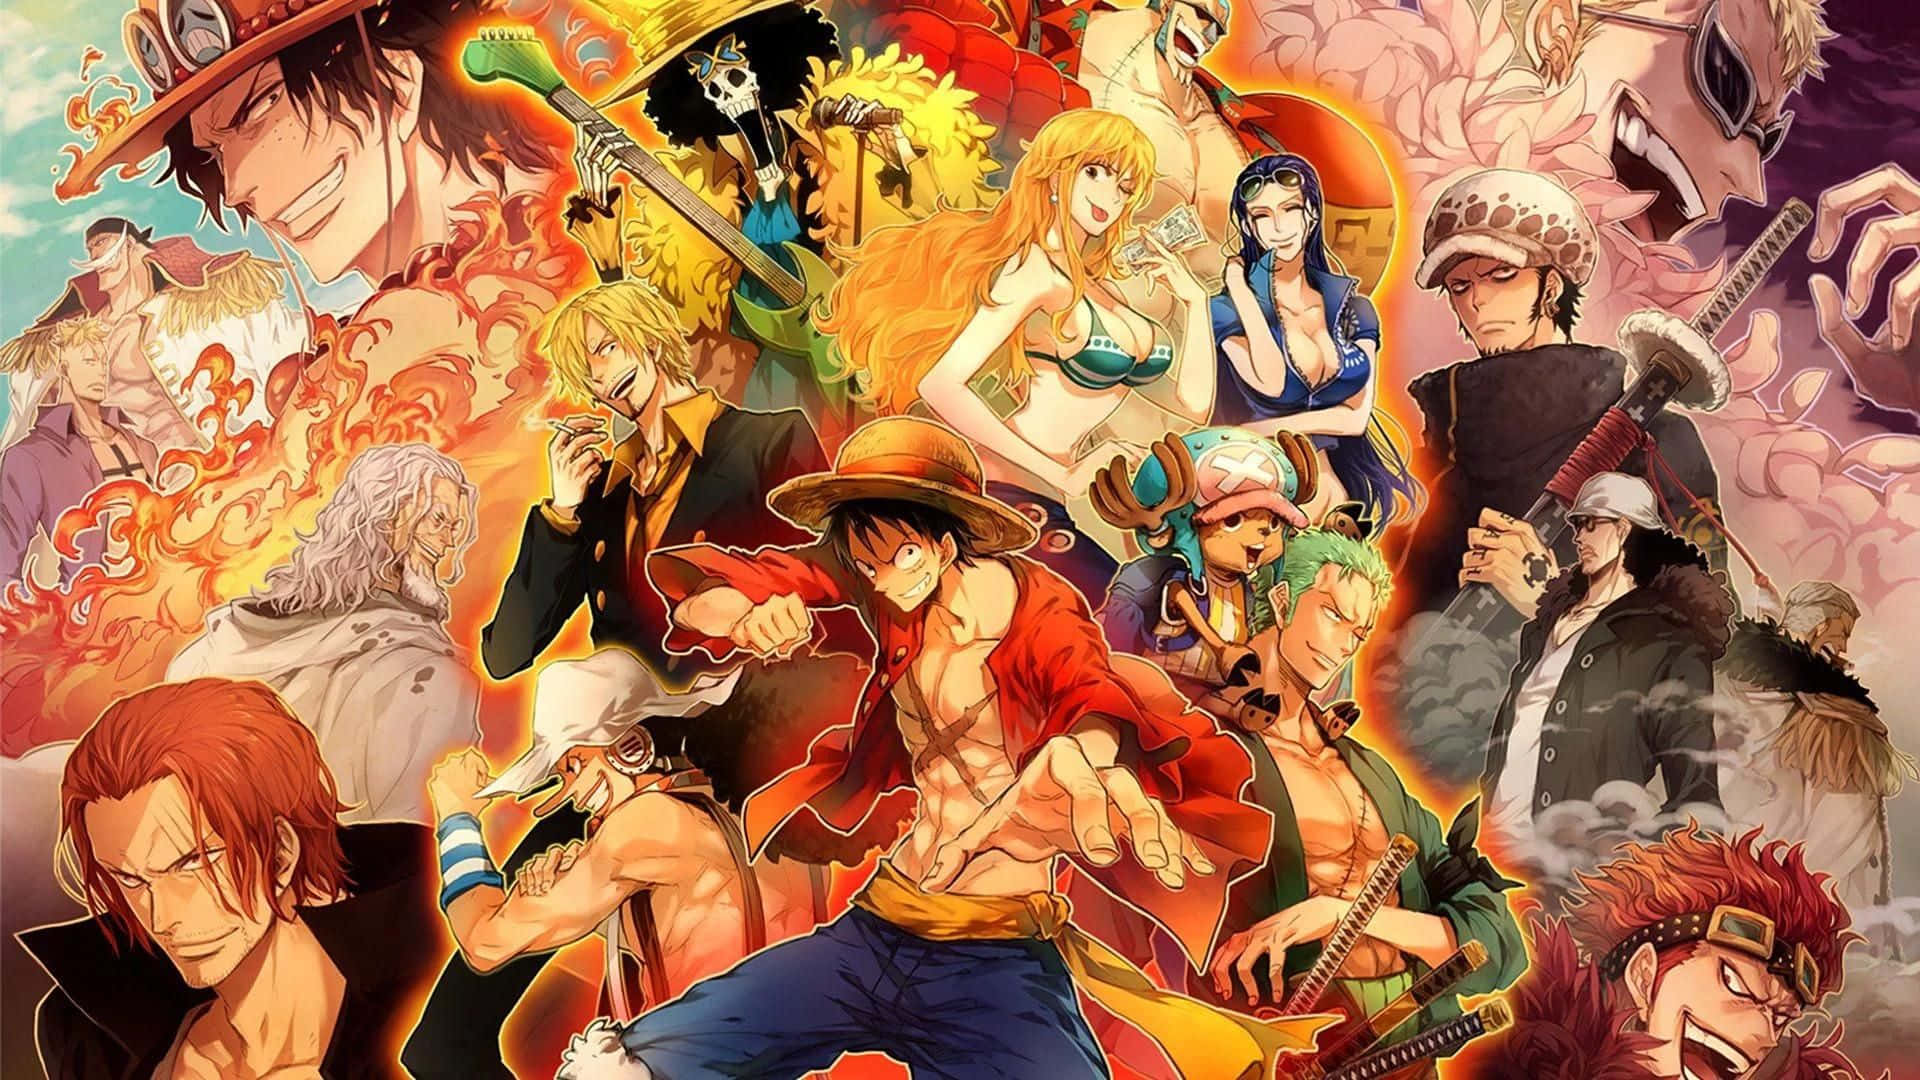 Bạn đang cần một bức ảnh nền mới cho điện thoại của mình? Hãy tải ngay ảnh nền One Piece để có thêm sự đa dạng và sắc màu trong màn hình của bạn. Hãy xem hình ảnh để biết thêm chi tiết.